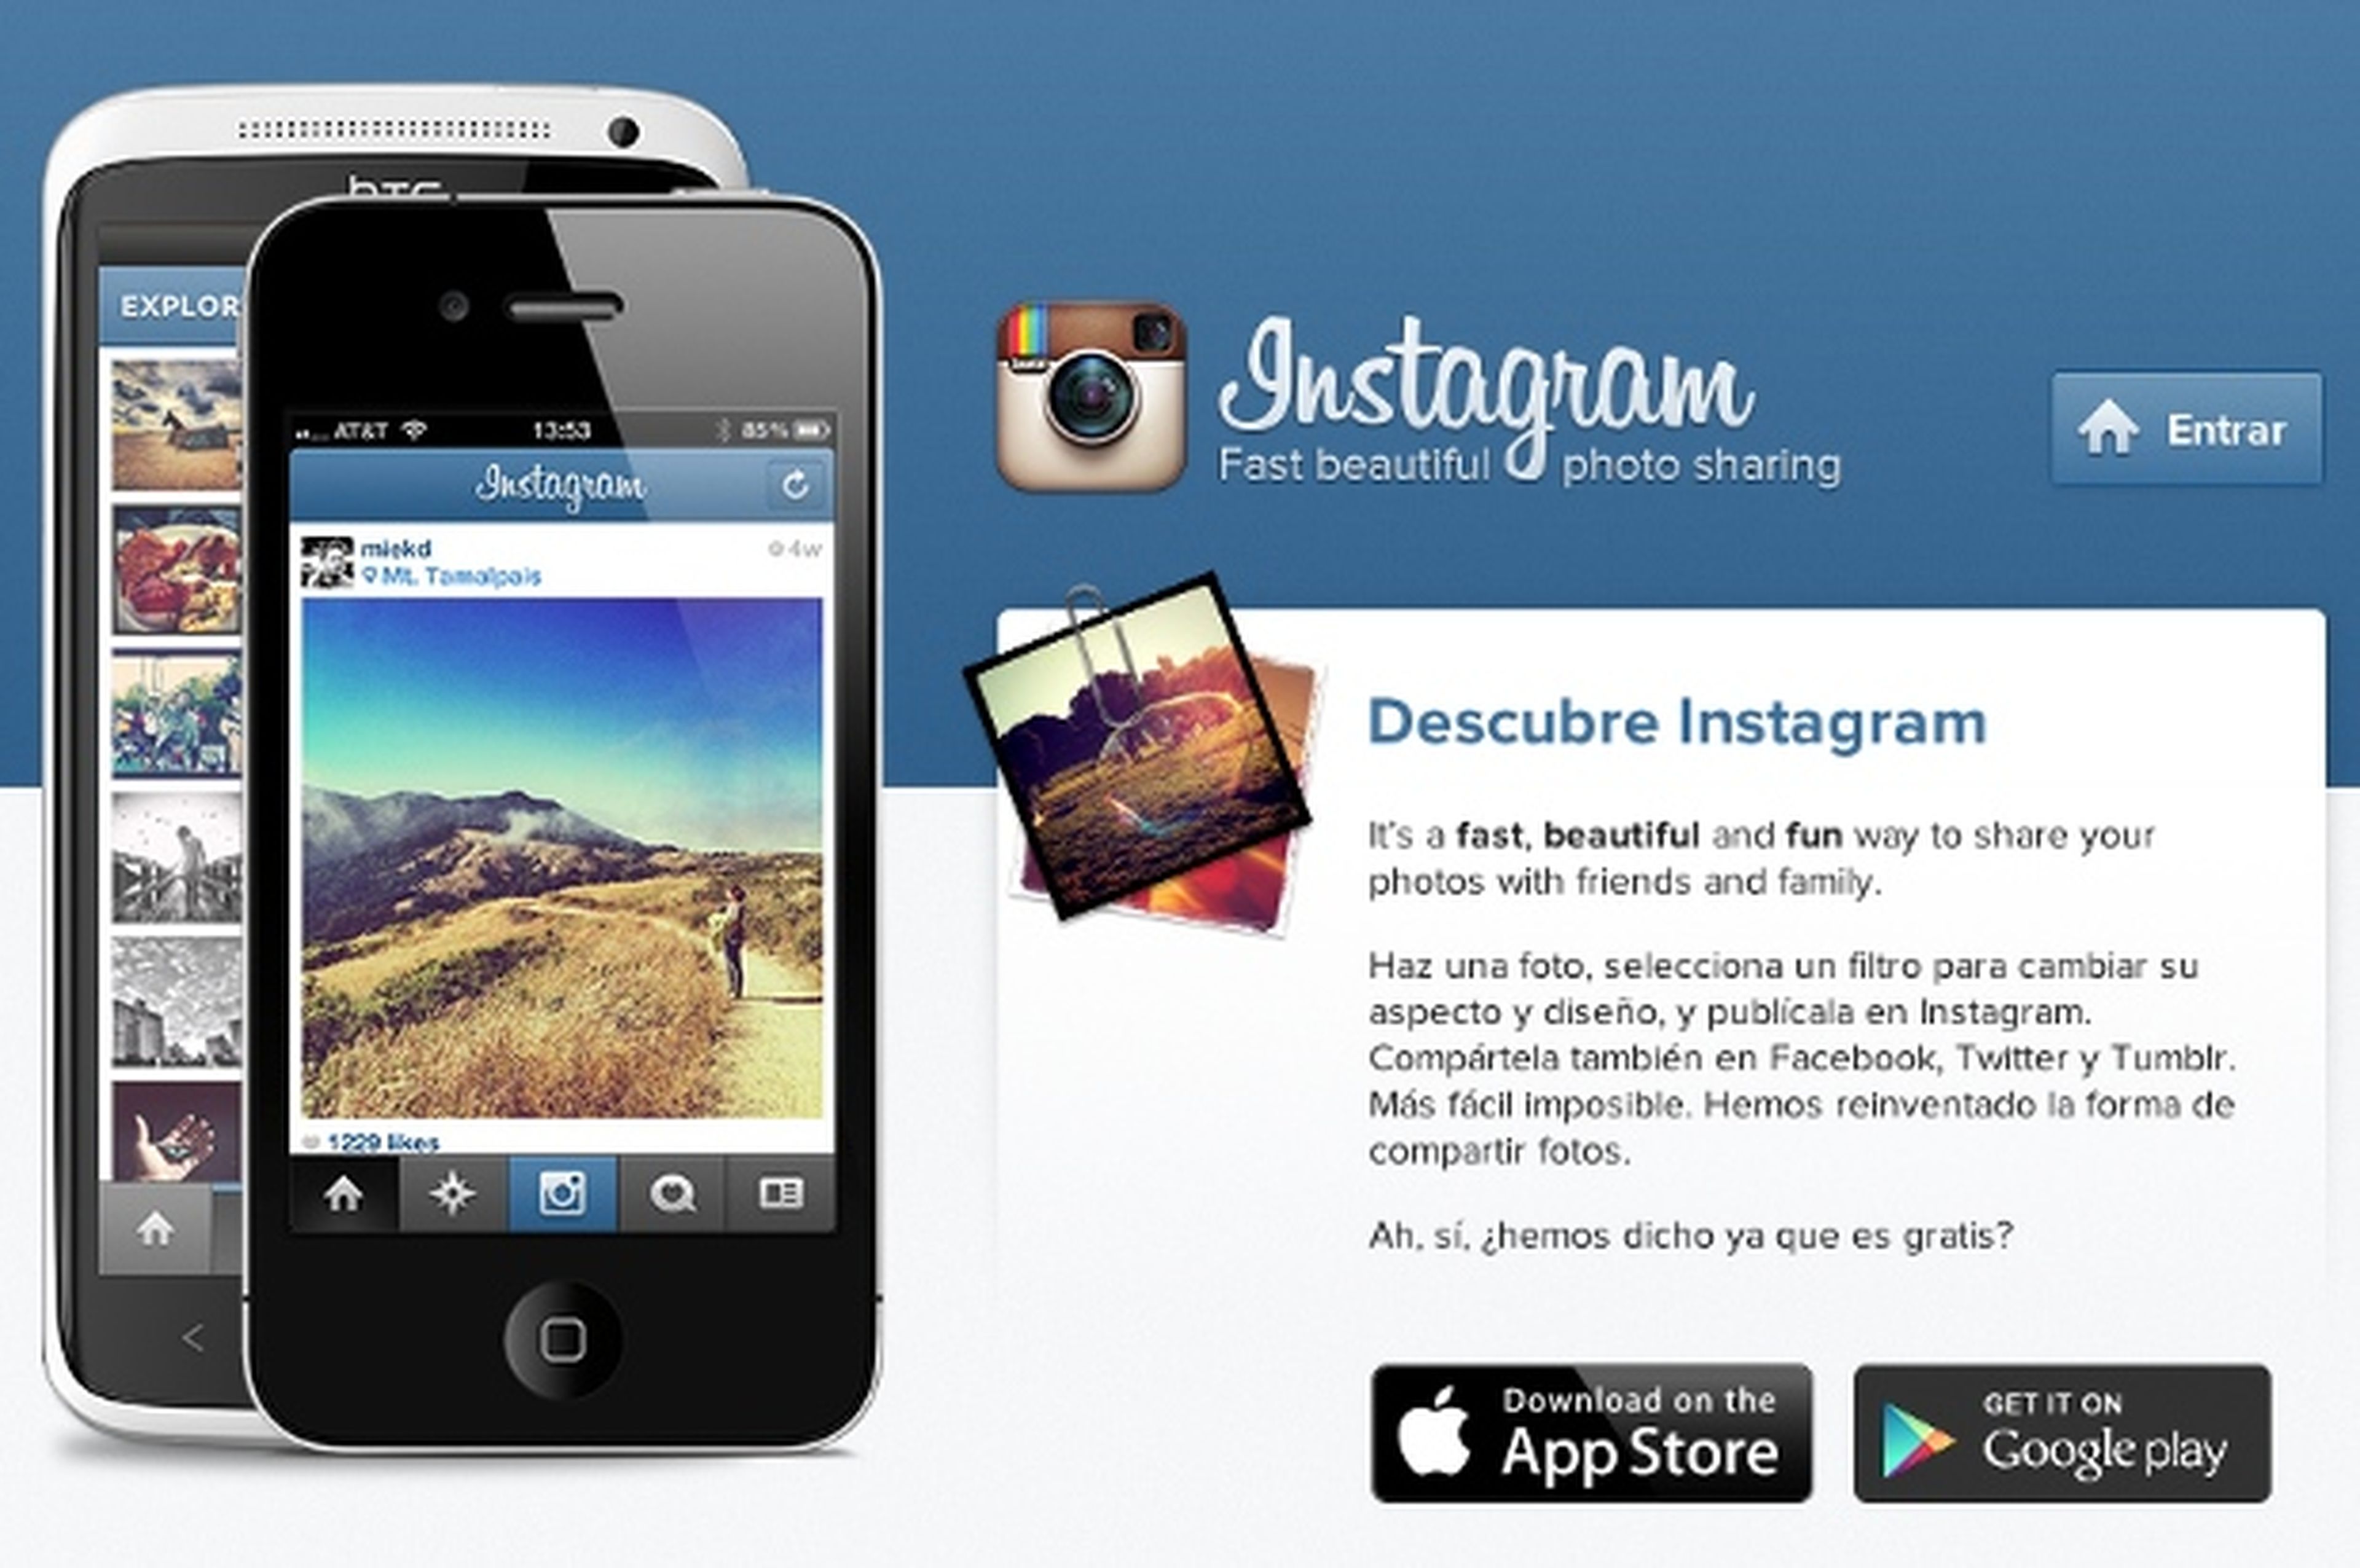 La web de Instagram ya permite acceso al feed de fotos